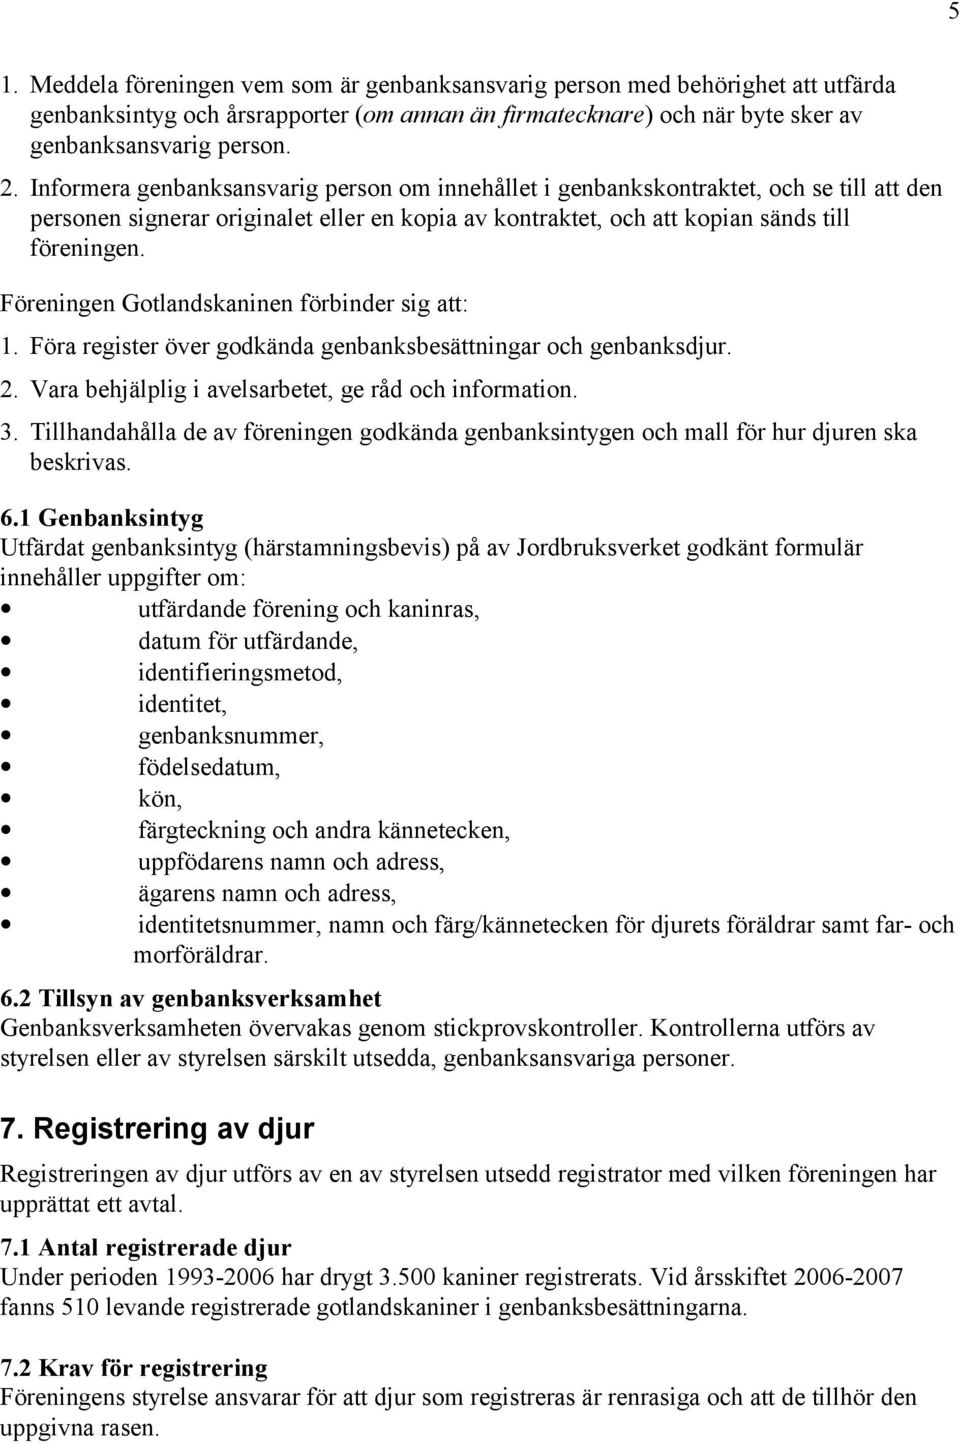 Föreningen Gotlandskaninen förbinder sig att: 1. Föra register över godkända genbanksbesättningar och genbanksdjur. 2. Vara behjälplig i avelsarbetet, ge råd och information. 3.